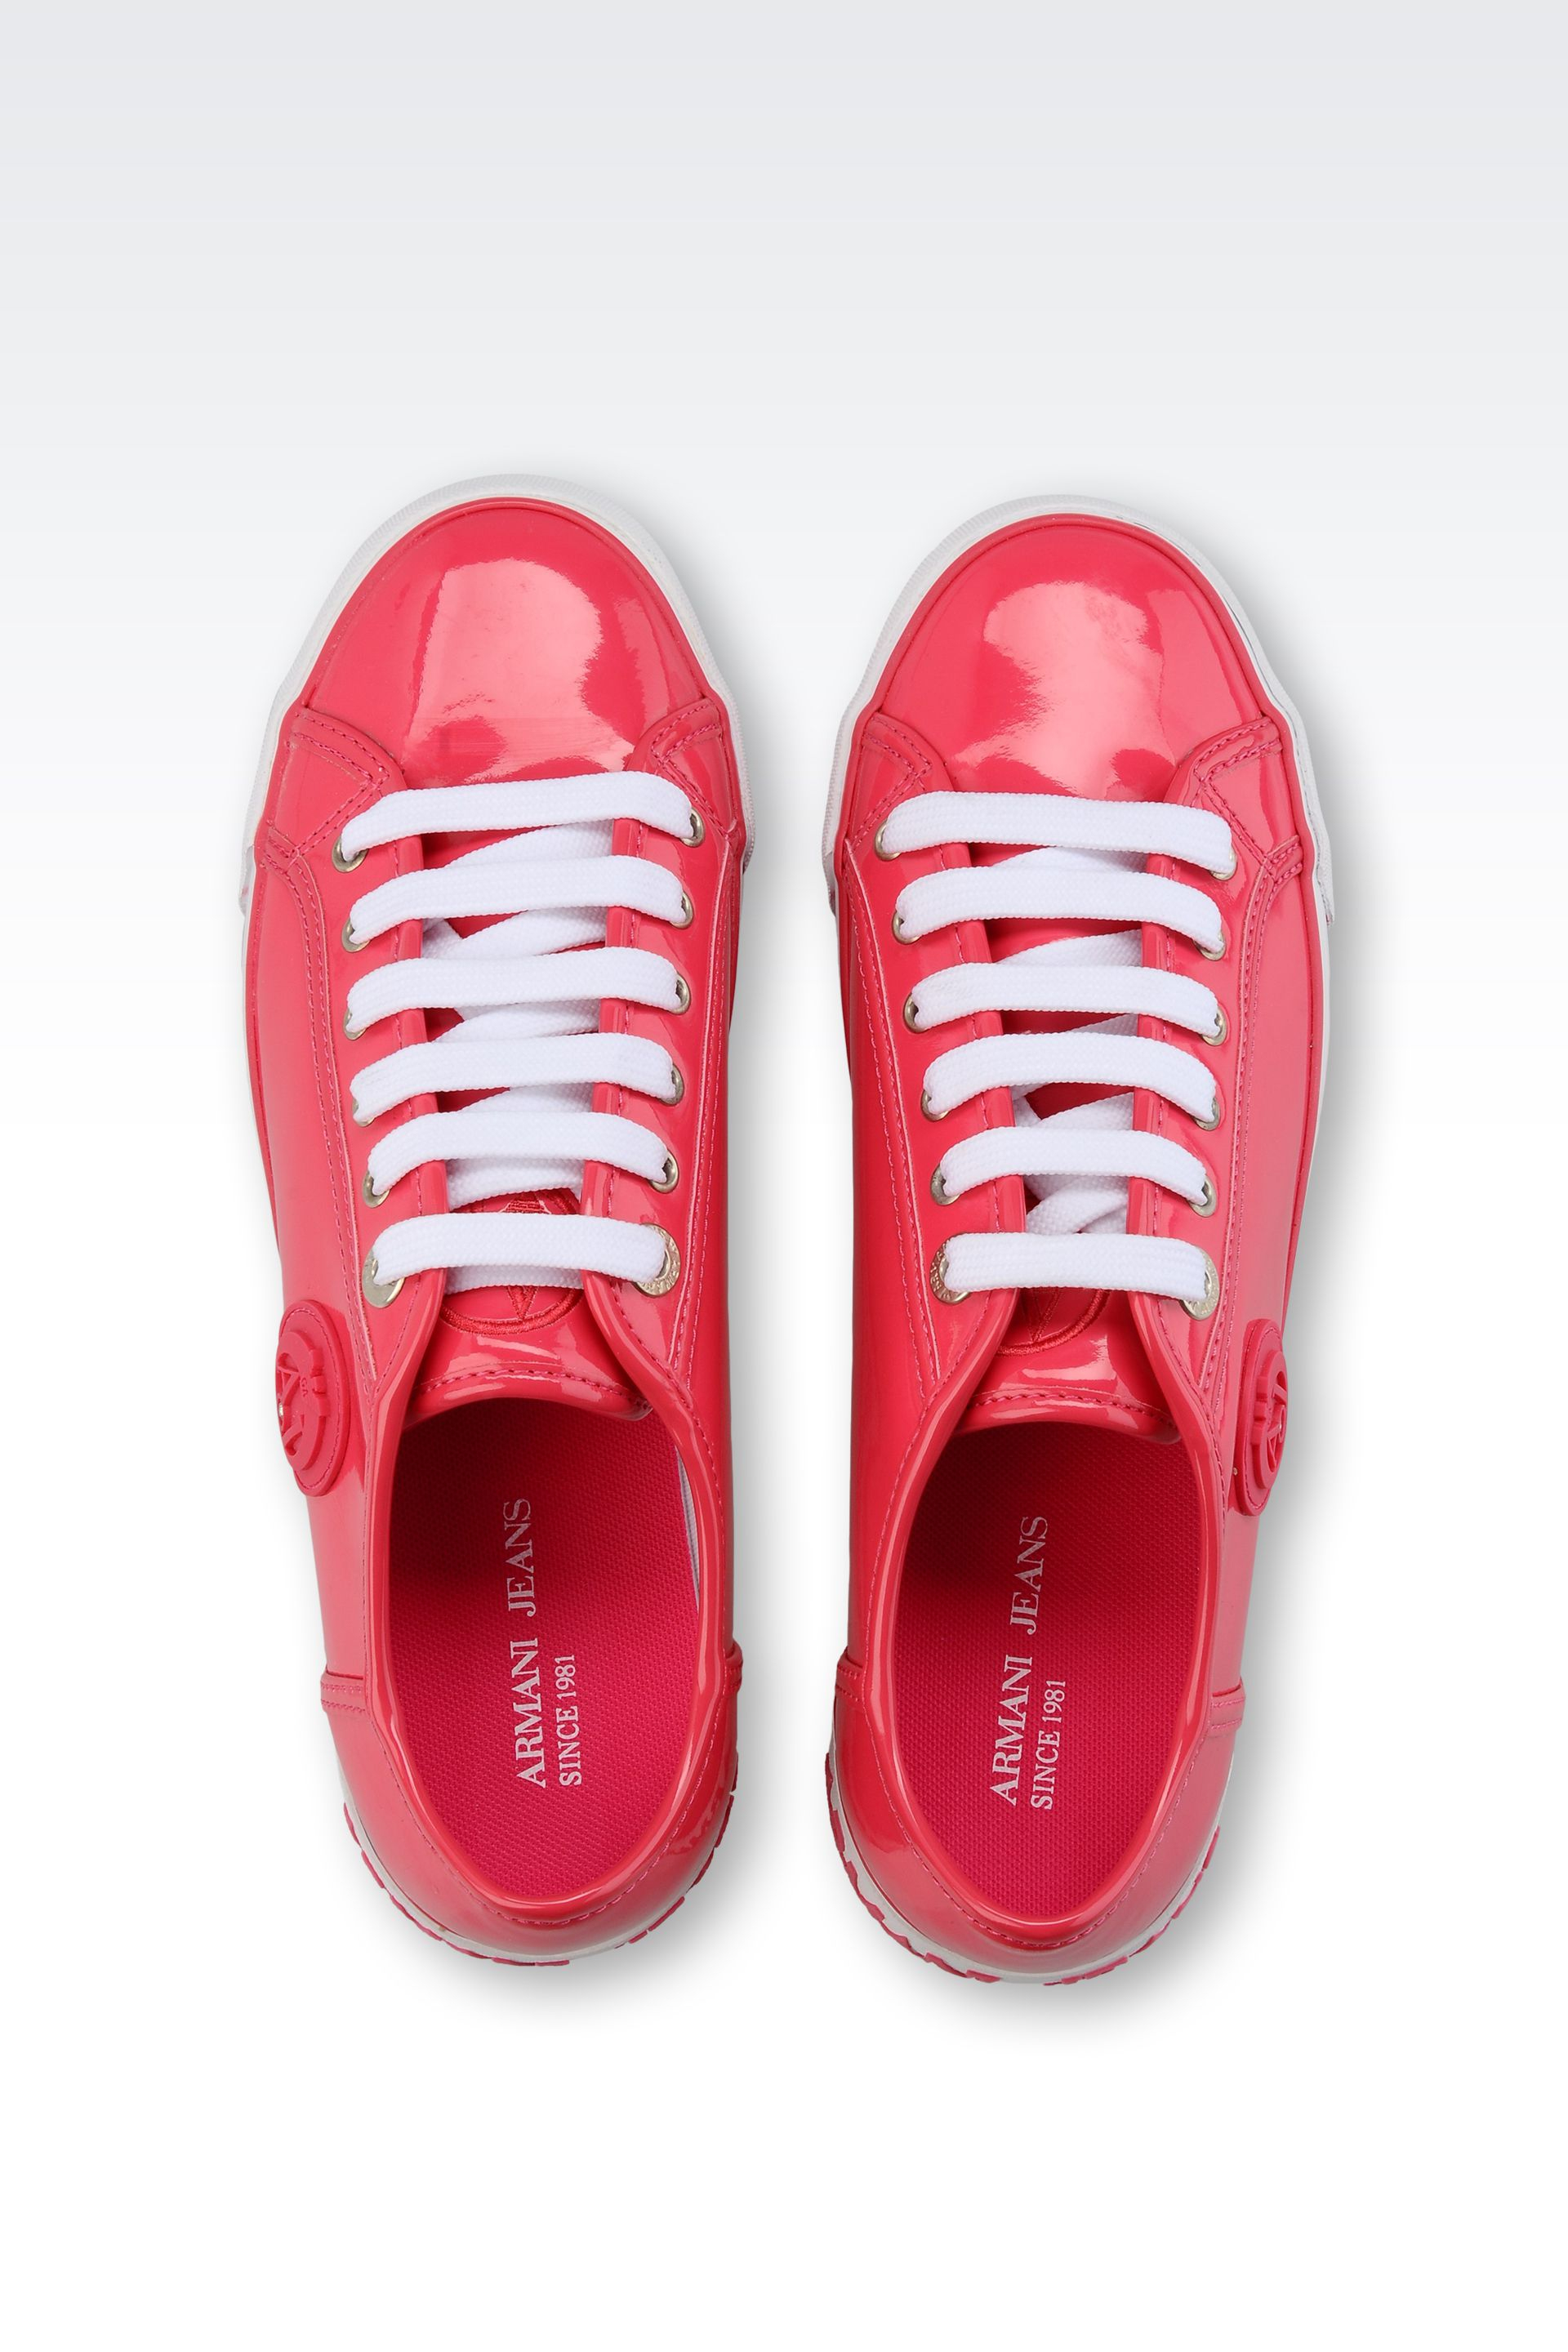 Armani Sneakers Pink